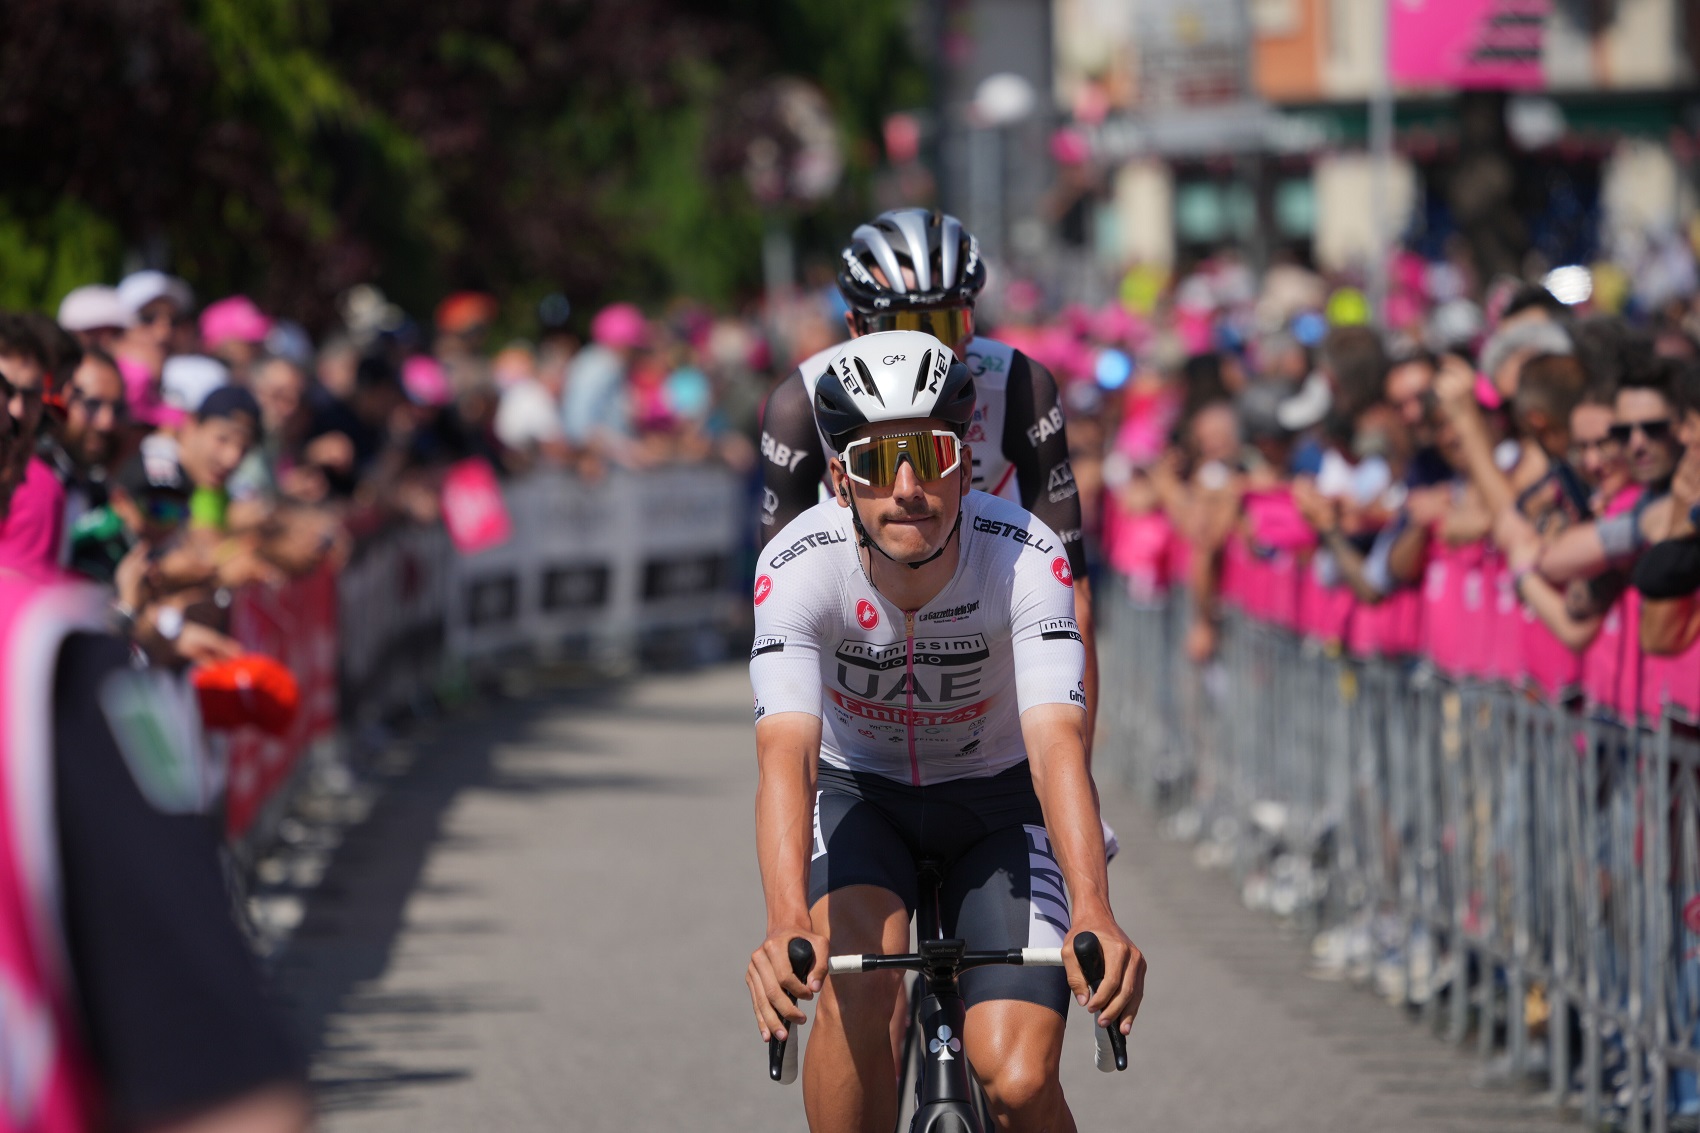 Pódio no Giro tira pressão a João Almeida na Vuelta